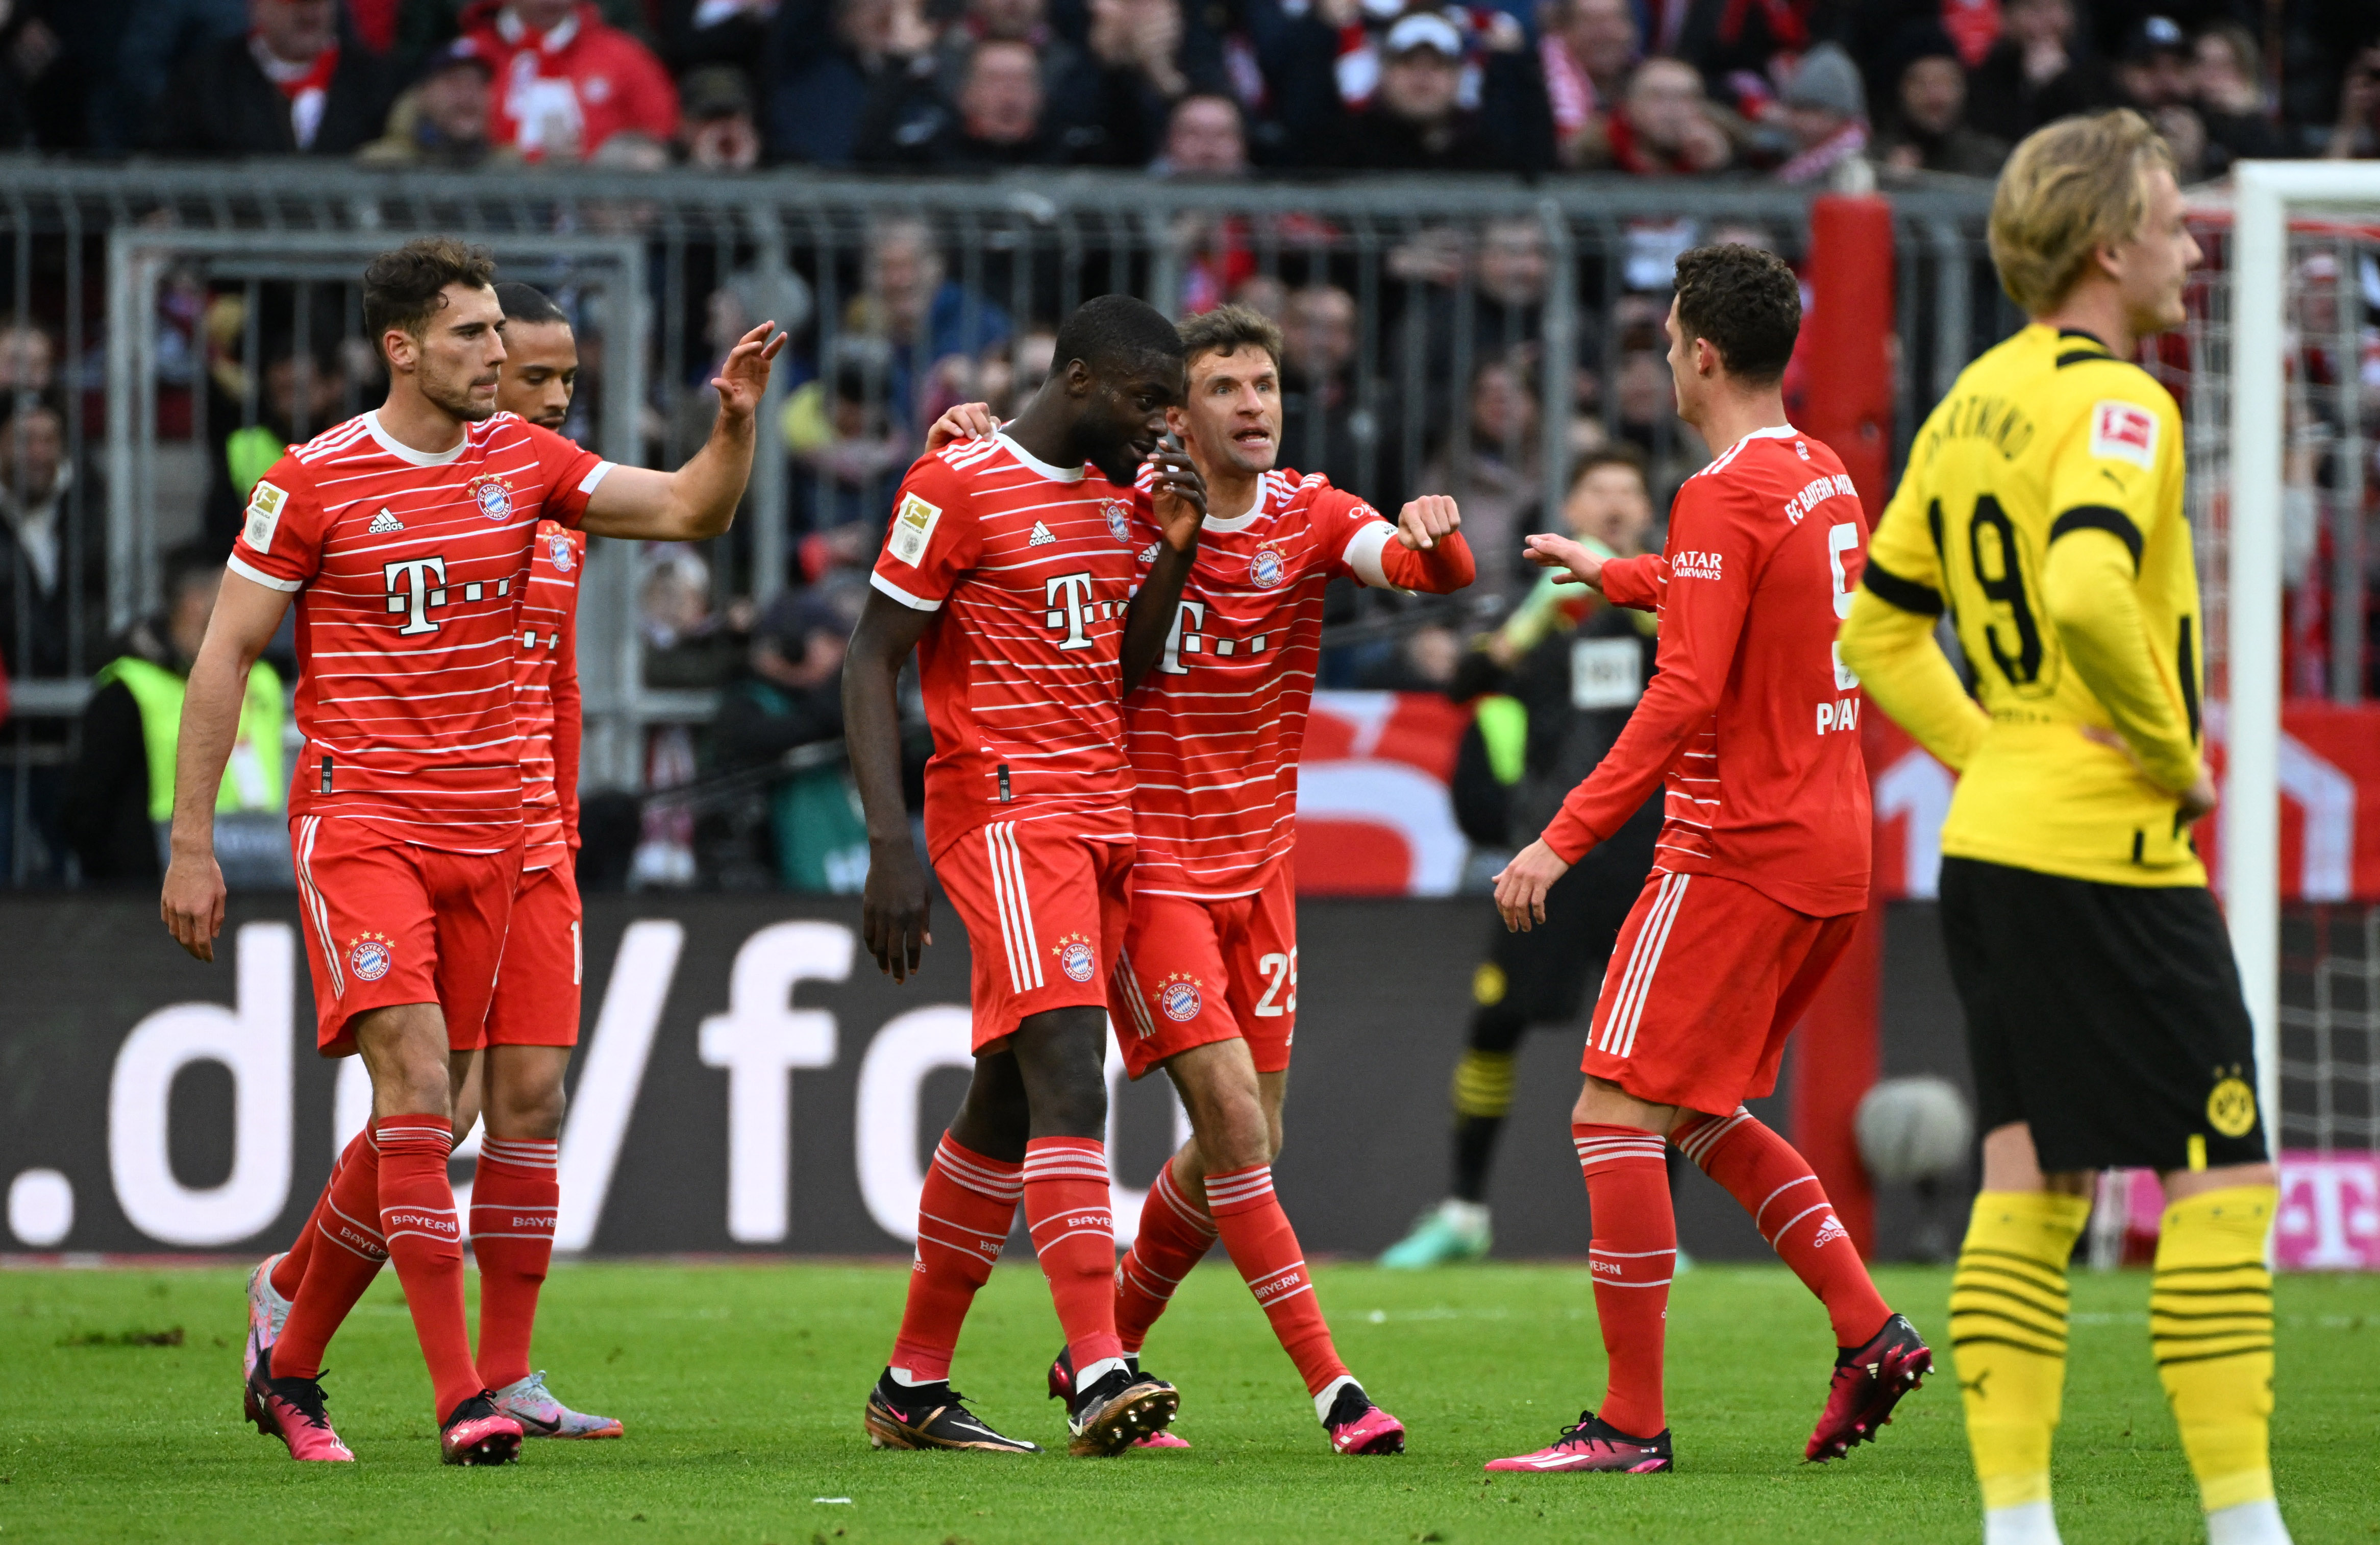 El Bayern Múnich le ganó el clásico al Borussia Dortmund y recuperó el liderazgo en la Bundesliga (REUTERS/Angelika Warmuth)